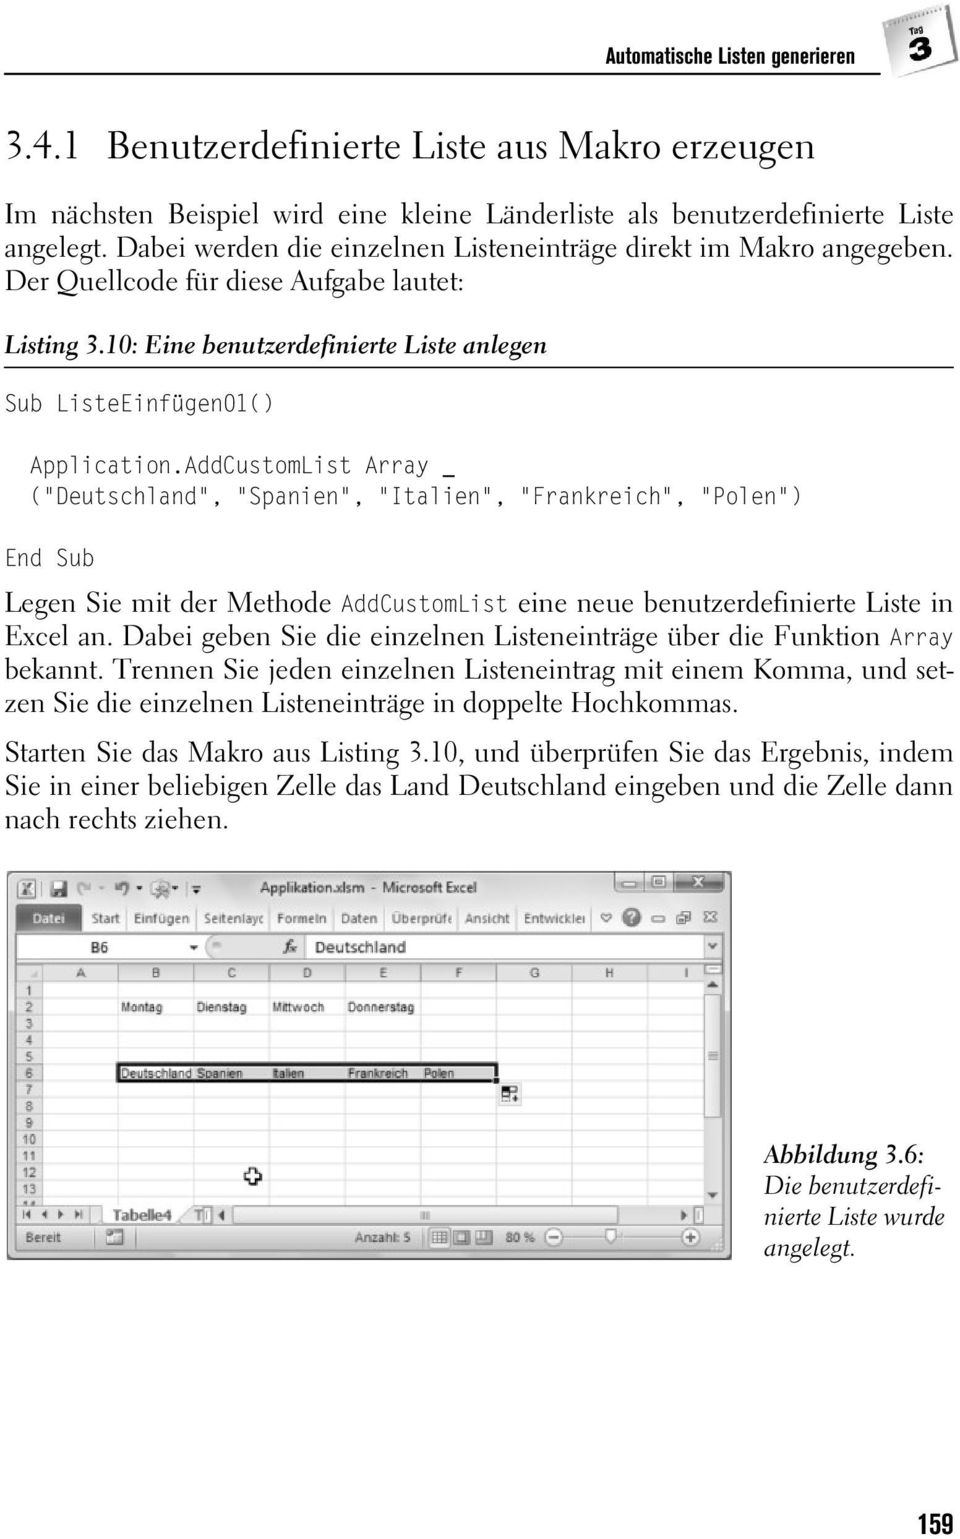 AddCustomList Array _ ("Deutschland", "Spanien", "Italien", "Frankreich", "Polen") Legen Sie mit der Methode AddCustomList eine neue benutzerdefinierte Liste in Excel an.